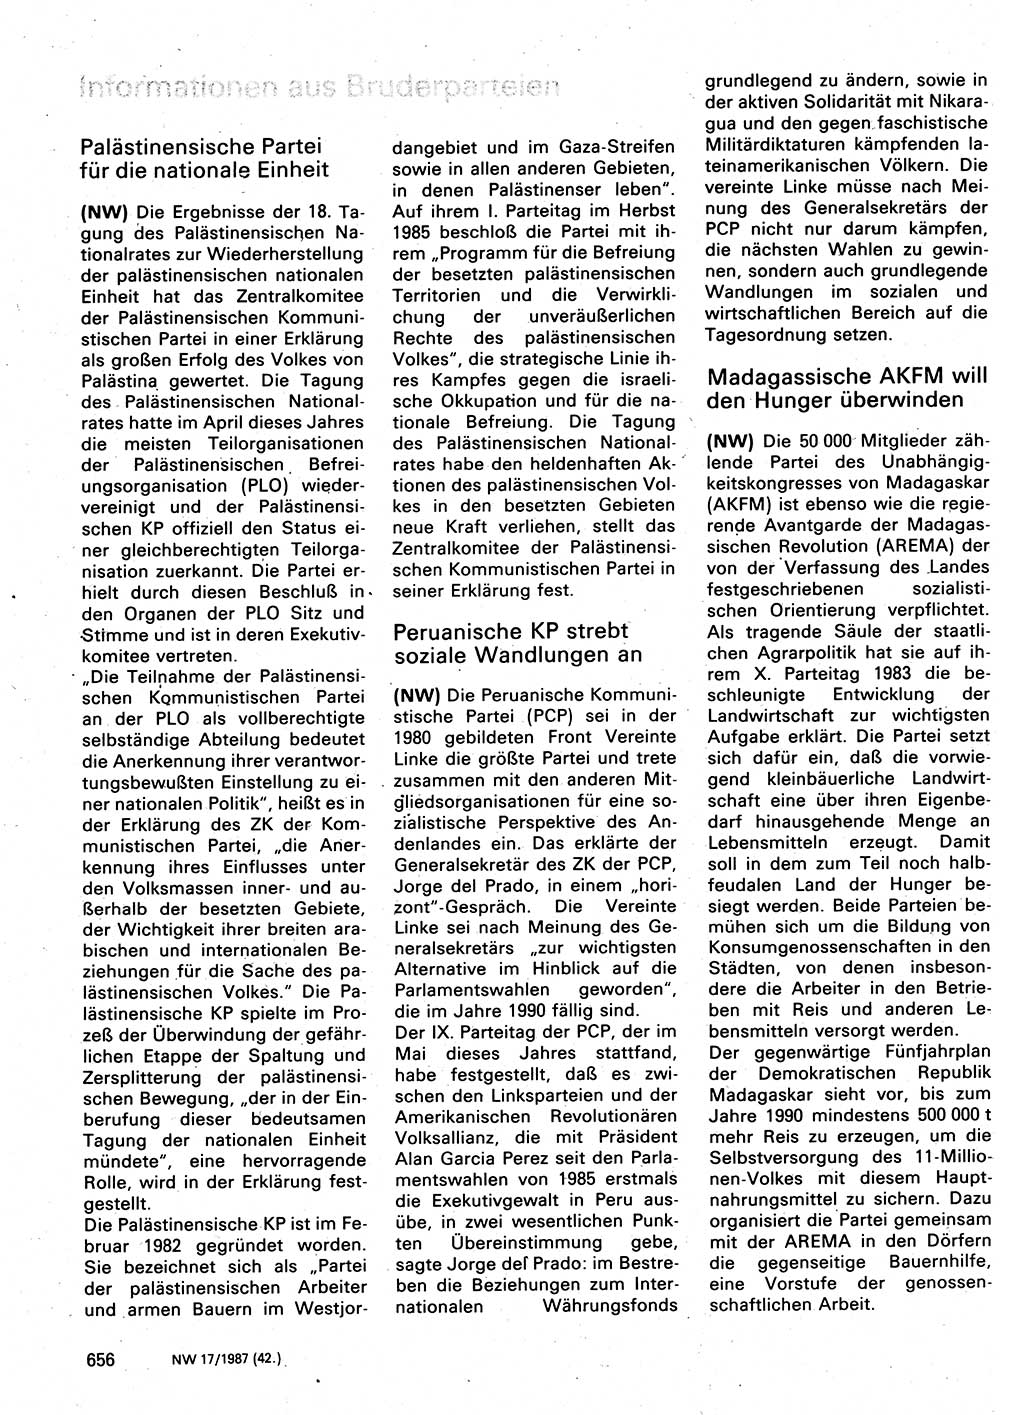 Neuer Weg (NW), Organ des Zentralkomitees (ZK) der SED (Sozialistische Einheitspartei Deutschlands) für Fragen des Parteilebens, 42. Jahrgang [Deutsche Demokratische Republik (DDR)] 1987, Seite 656 (NW ZK SED DDR 1987, S. 656)